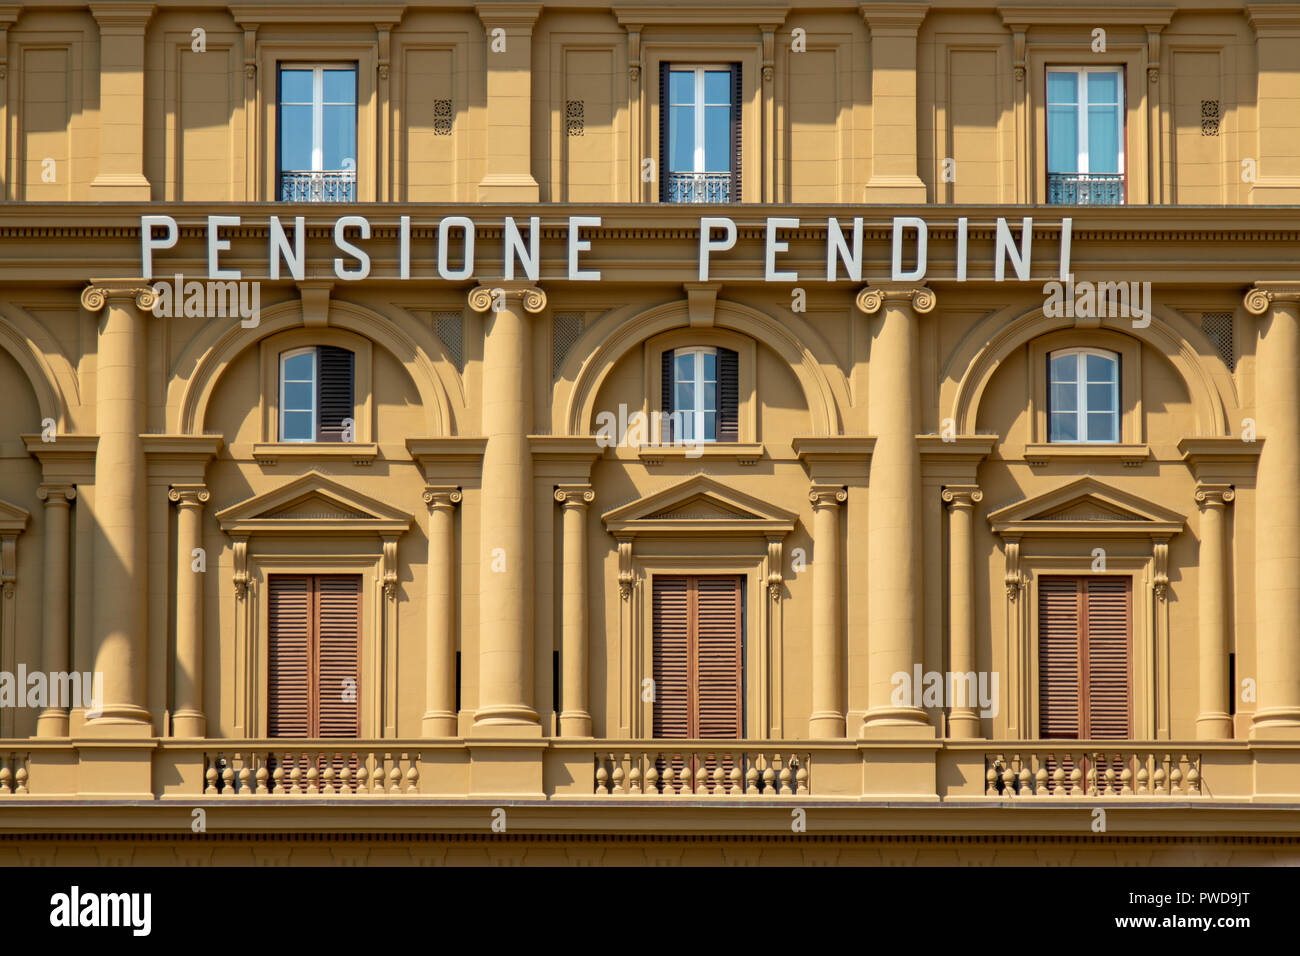 La face de l'Hotel Pendini Florence en Italie, donne sur la Piazza della Repubblica où le signe Pensione Pendini se détache sur les murs écru. Banque D'Images